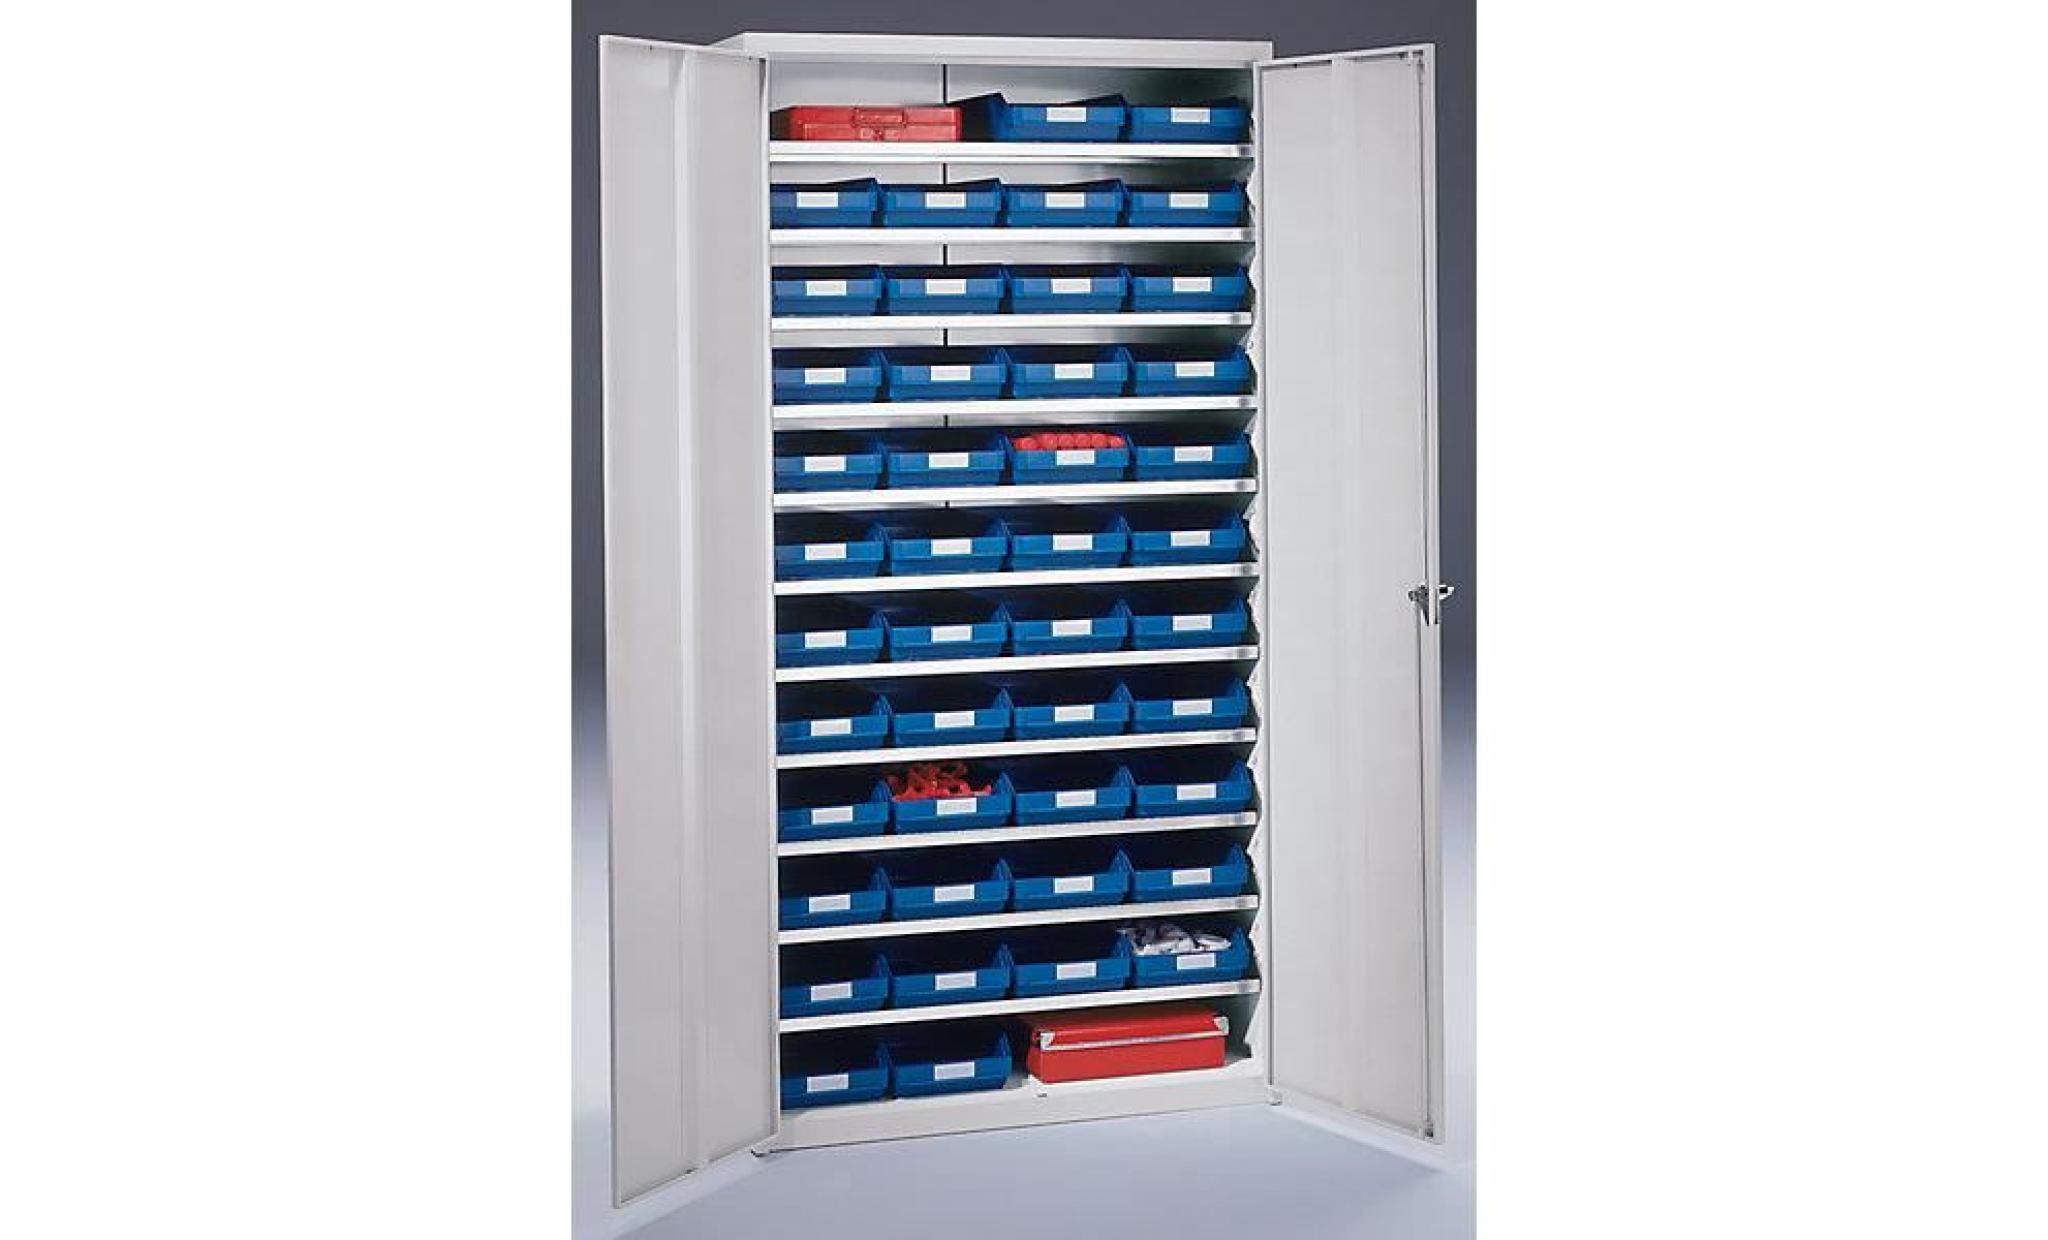 armoire à bacs avec bacs de stockage   h x l x p 1970 x 1000 x 450 mm avec 40 bacs rouges et 24 bacs bleus   armoire armoire pour